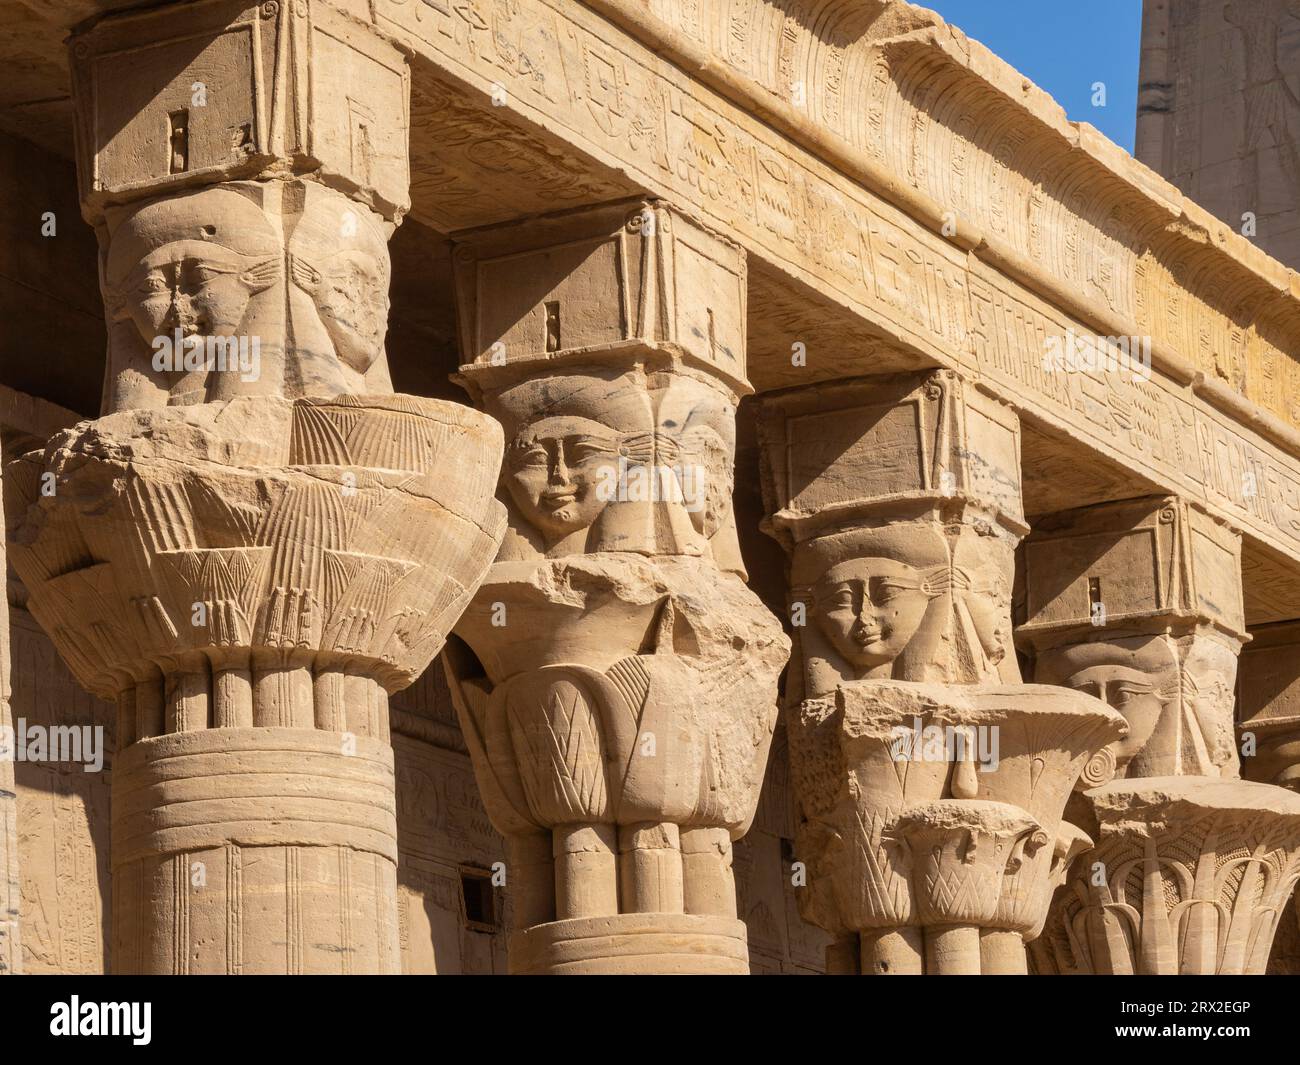 Colonne nel complesso del tempio di file, il tempio di Iside, attualmente sull'isola di Agilkia, sito patrimonio dell'umanità dell'UNESCO, Egitto, Nord Africa, Africa Foto Stock